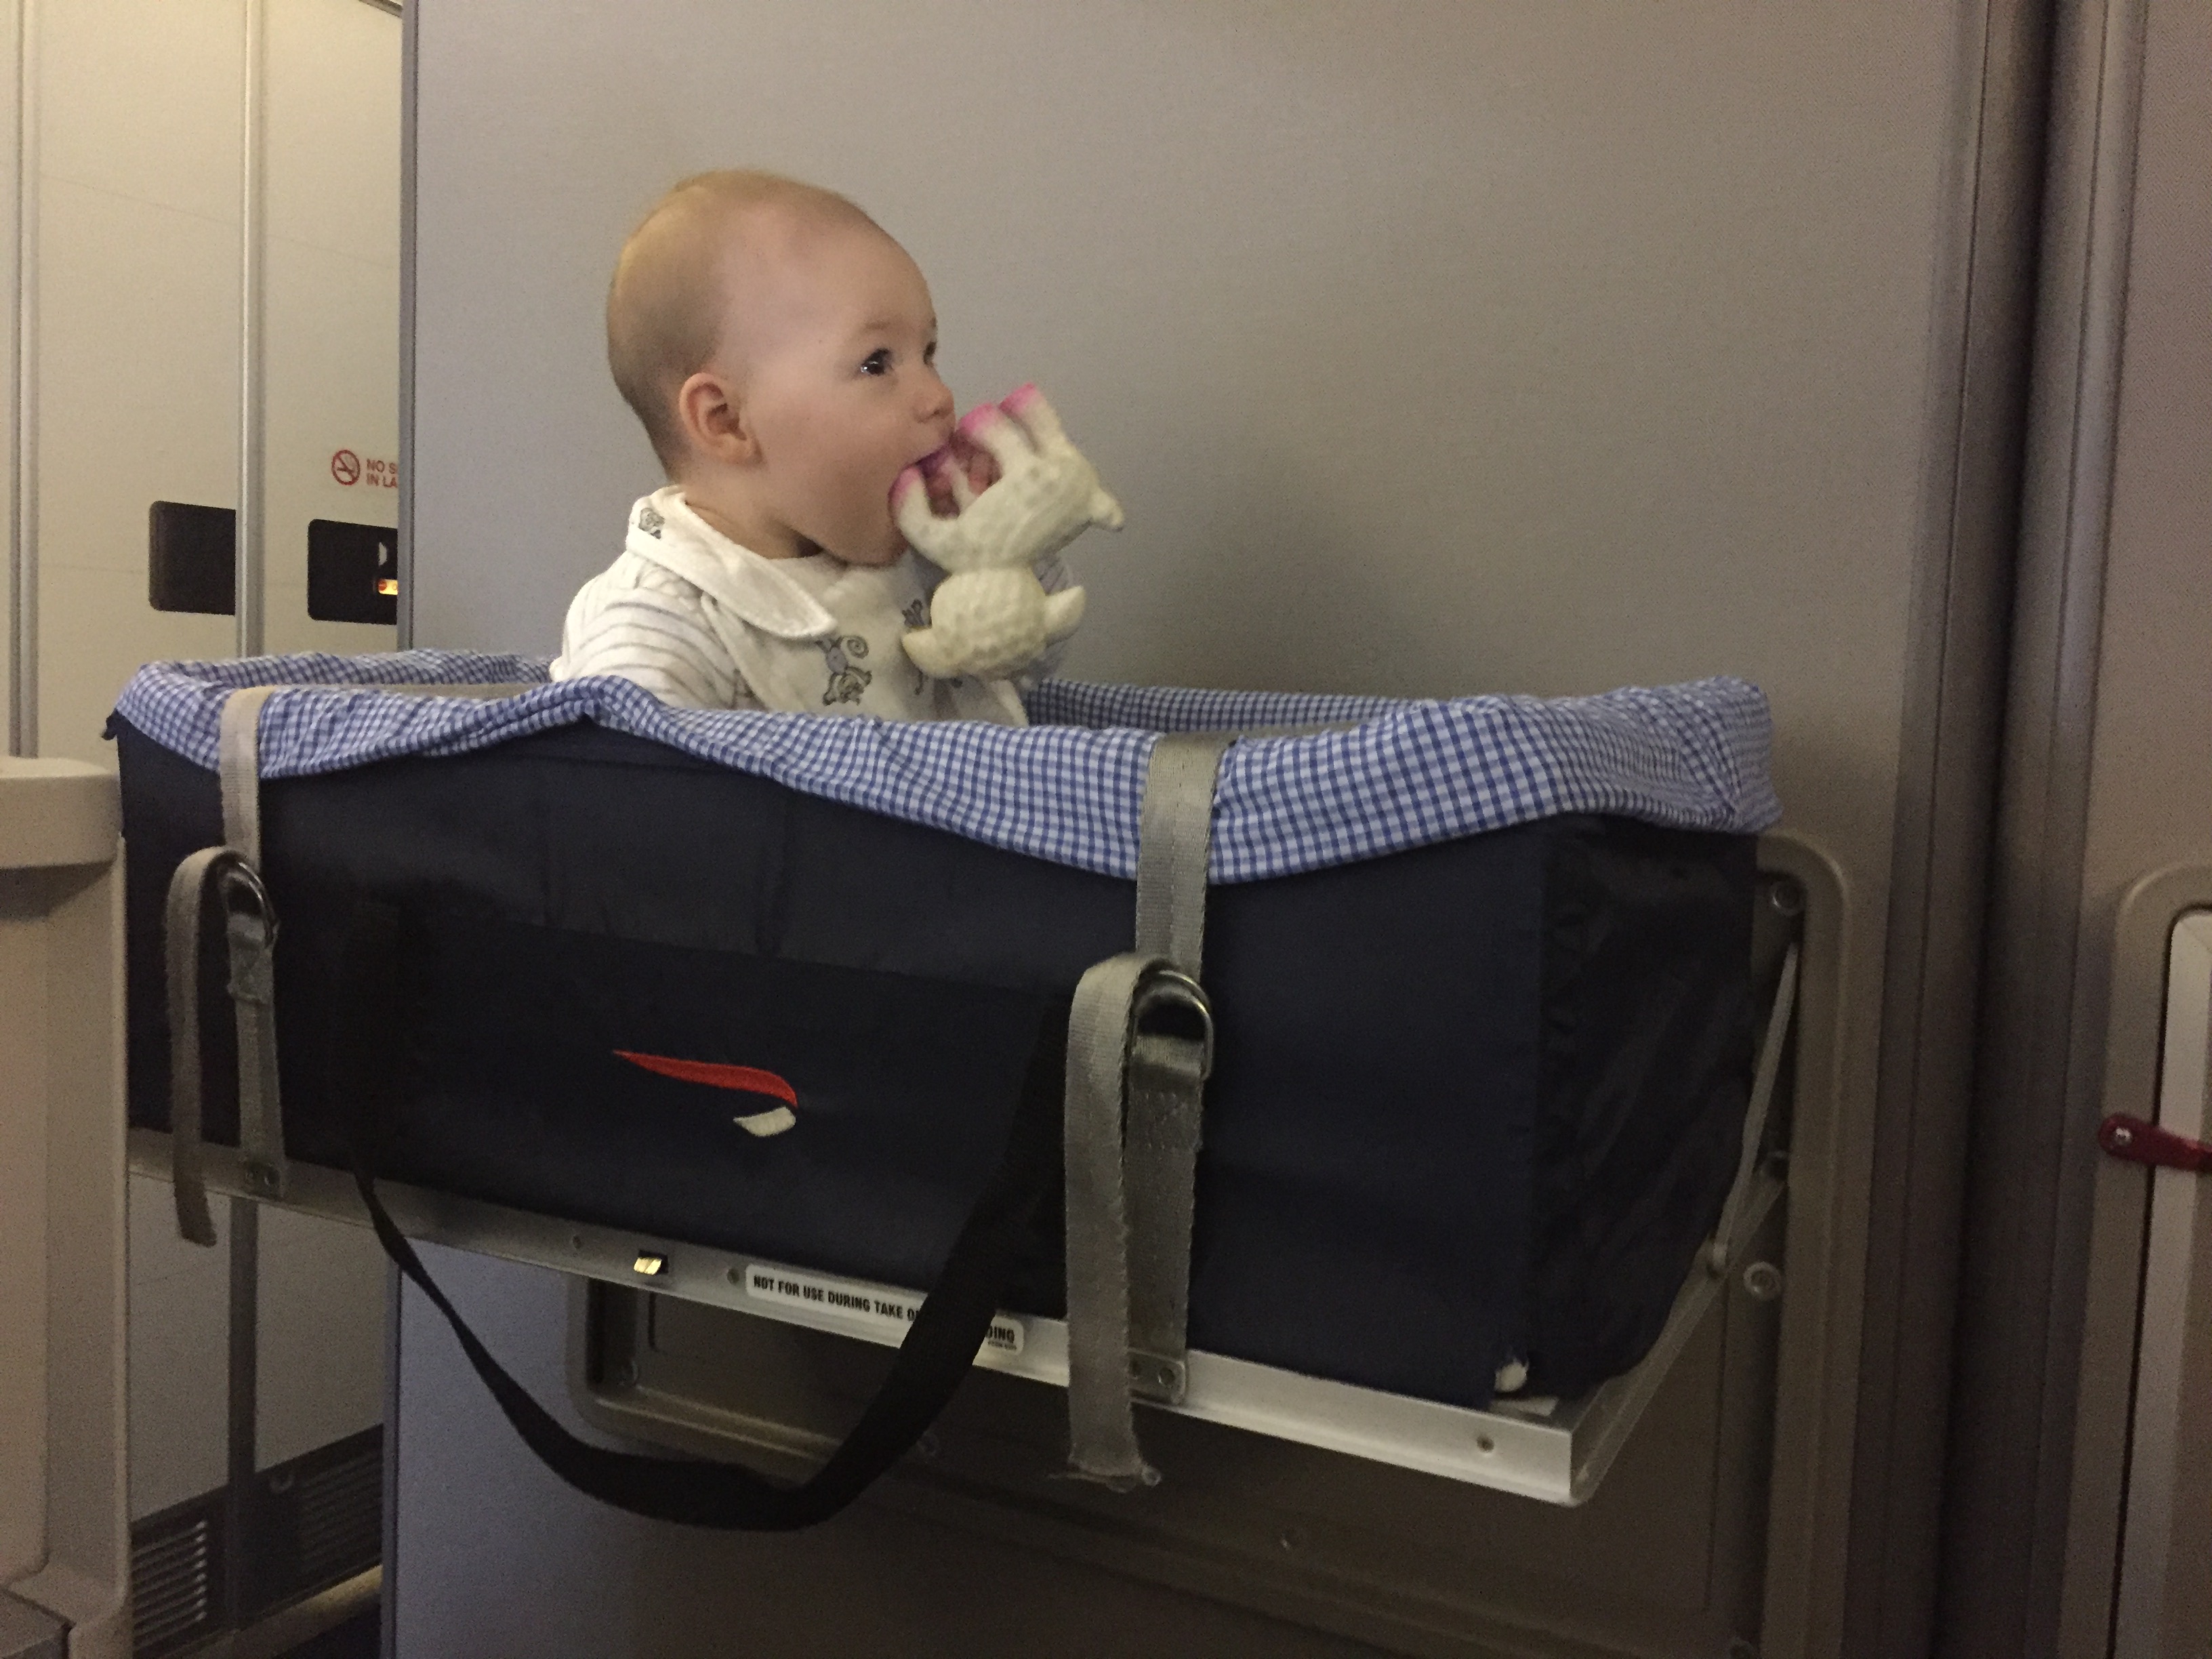 british airways baby stroller